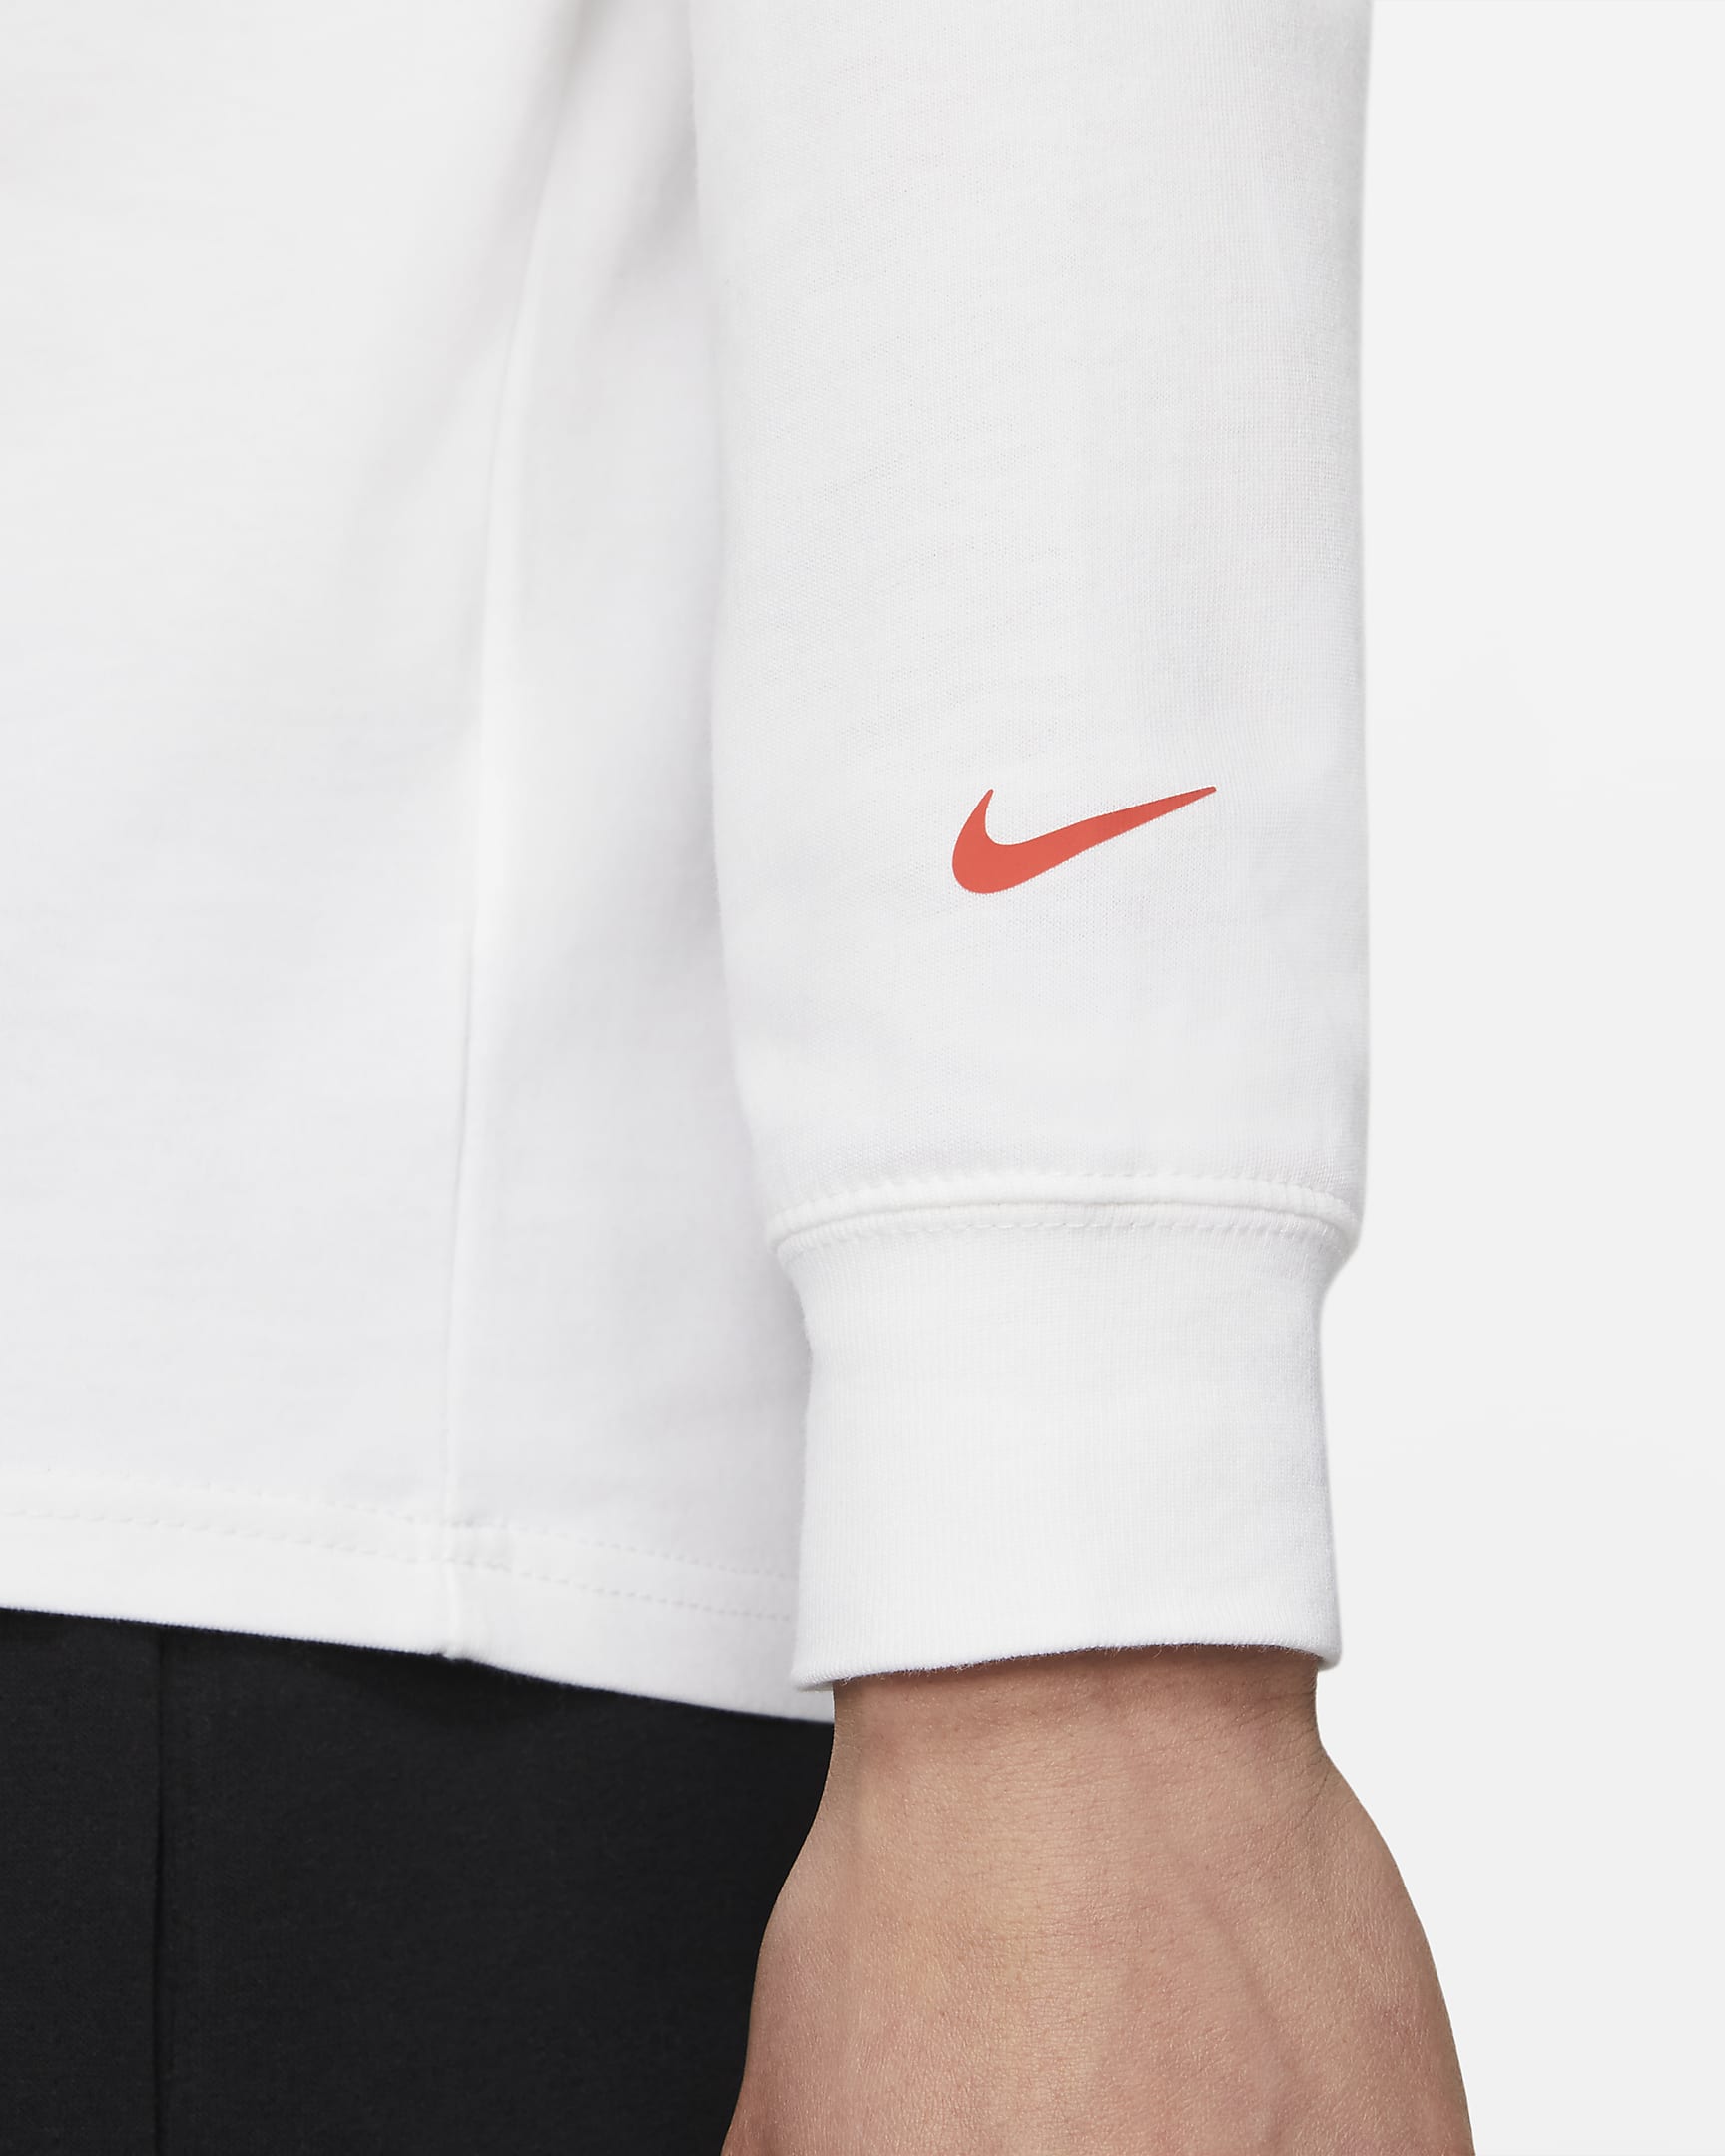 Nike Sportswear Men's Long-Sleeve Mock Neck T-Shirt. Nike JP